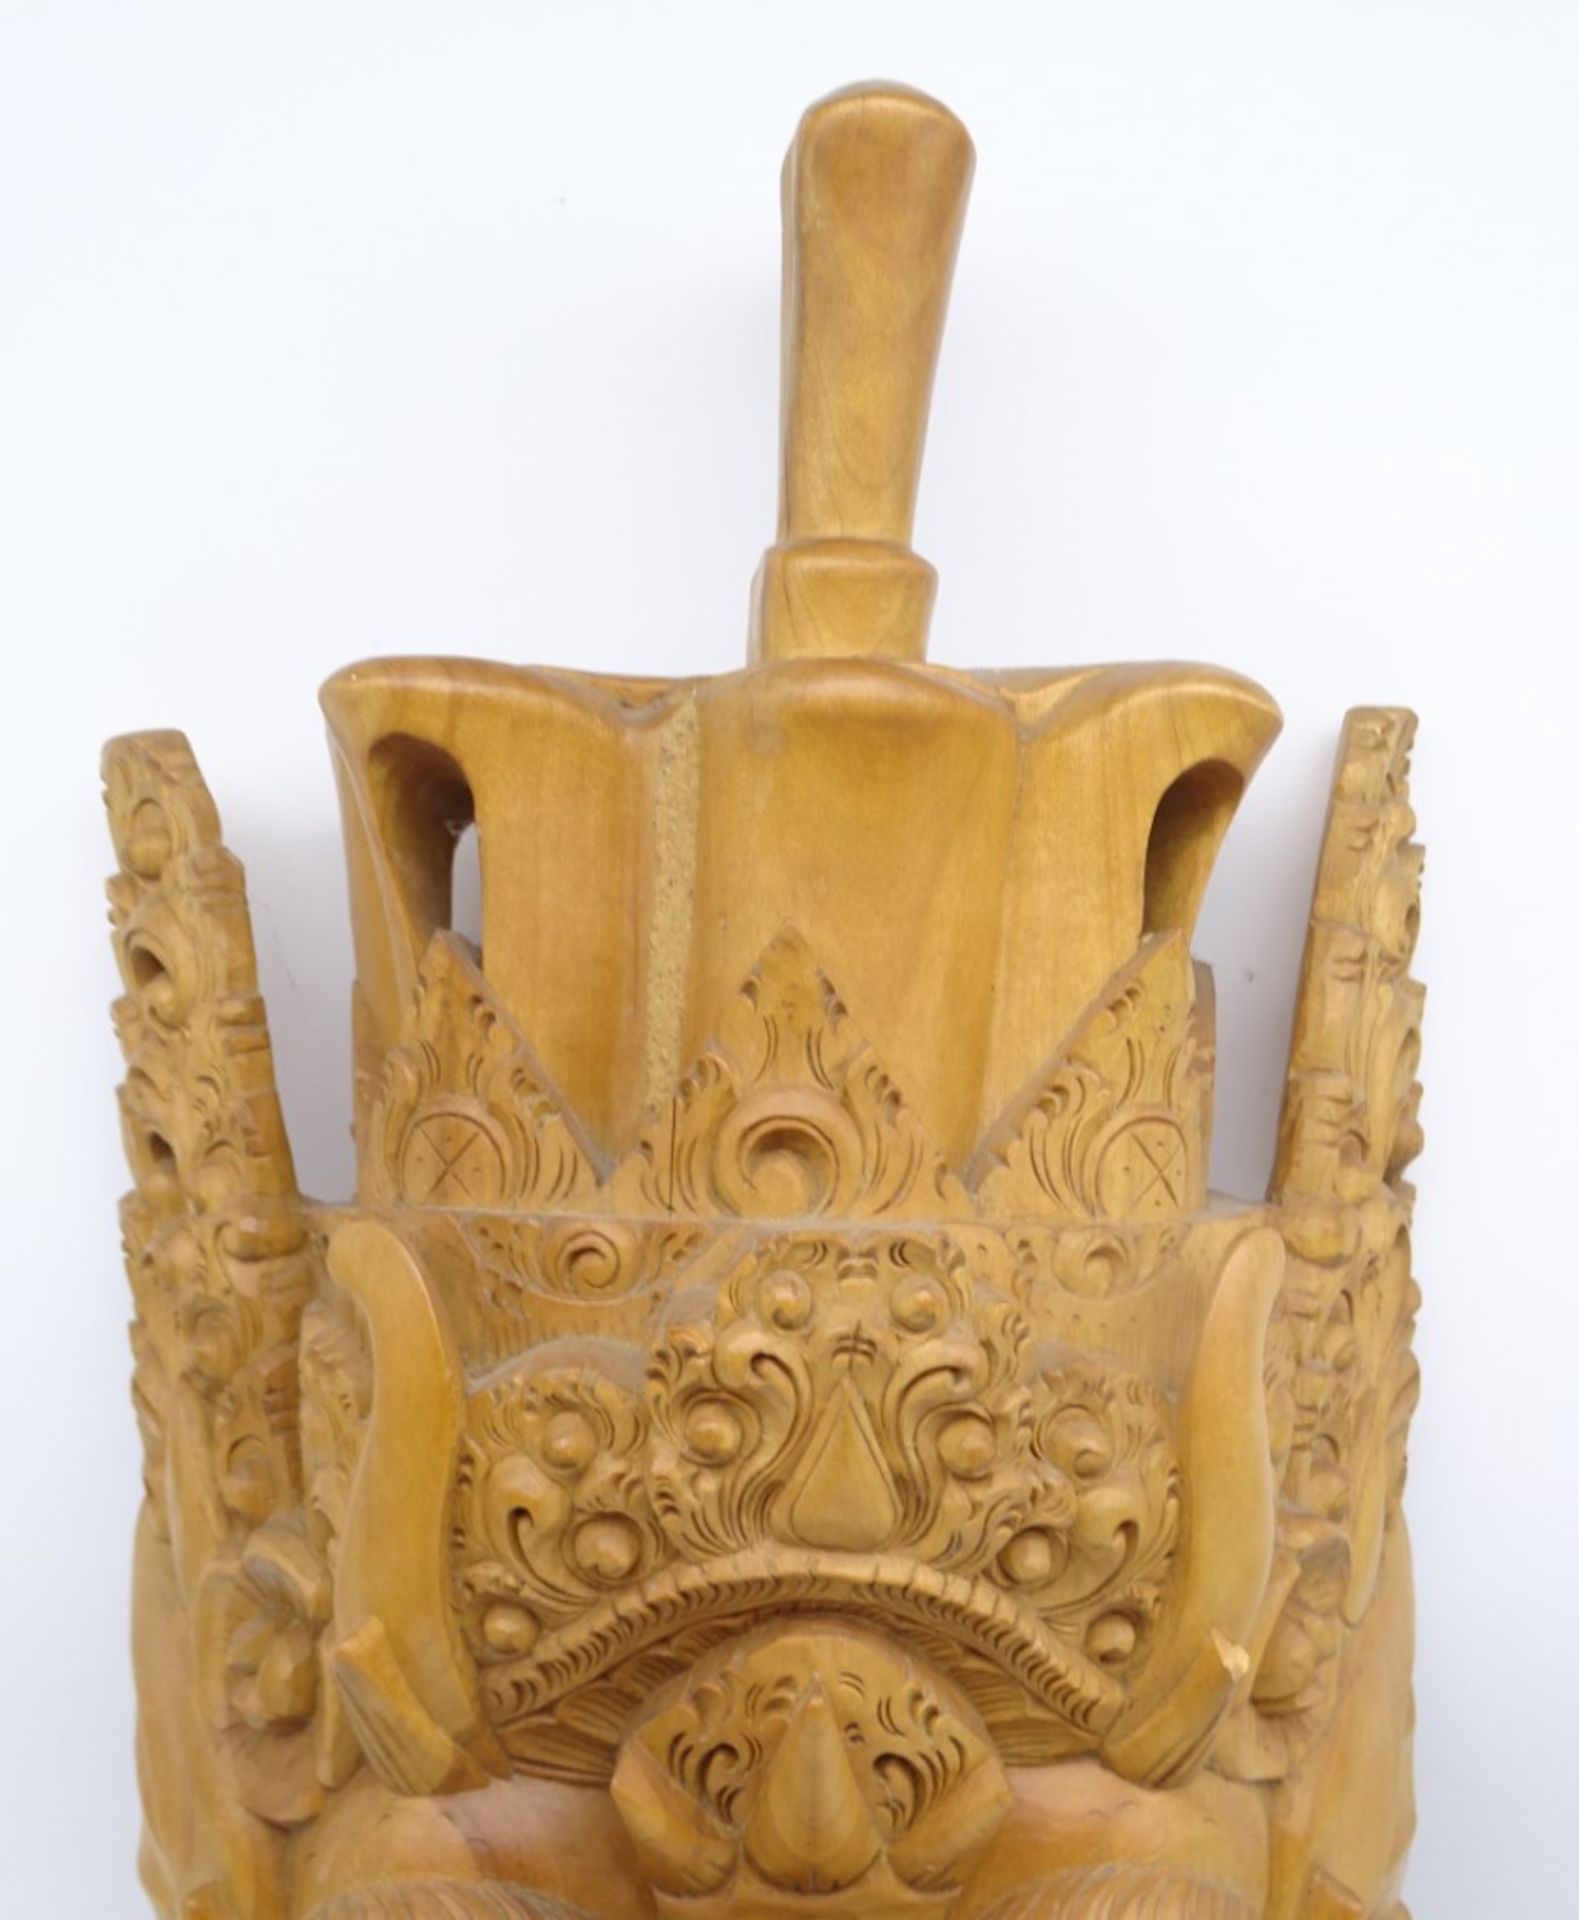 Balinesische Barong-Maske aus Holz, 56 x 26,5 cm, im Mundwinkel rechte Seite Riss, leicht reinigung - Bild 3 aus 5